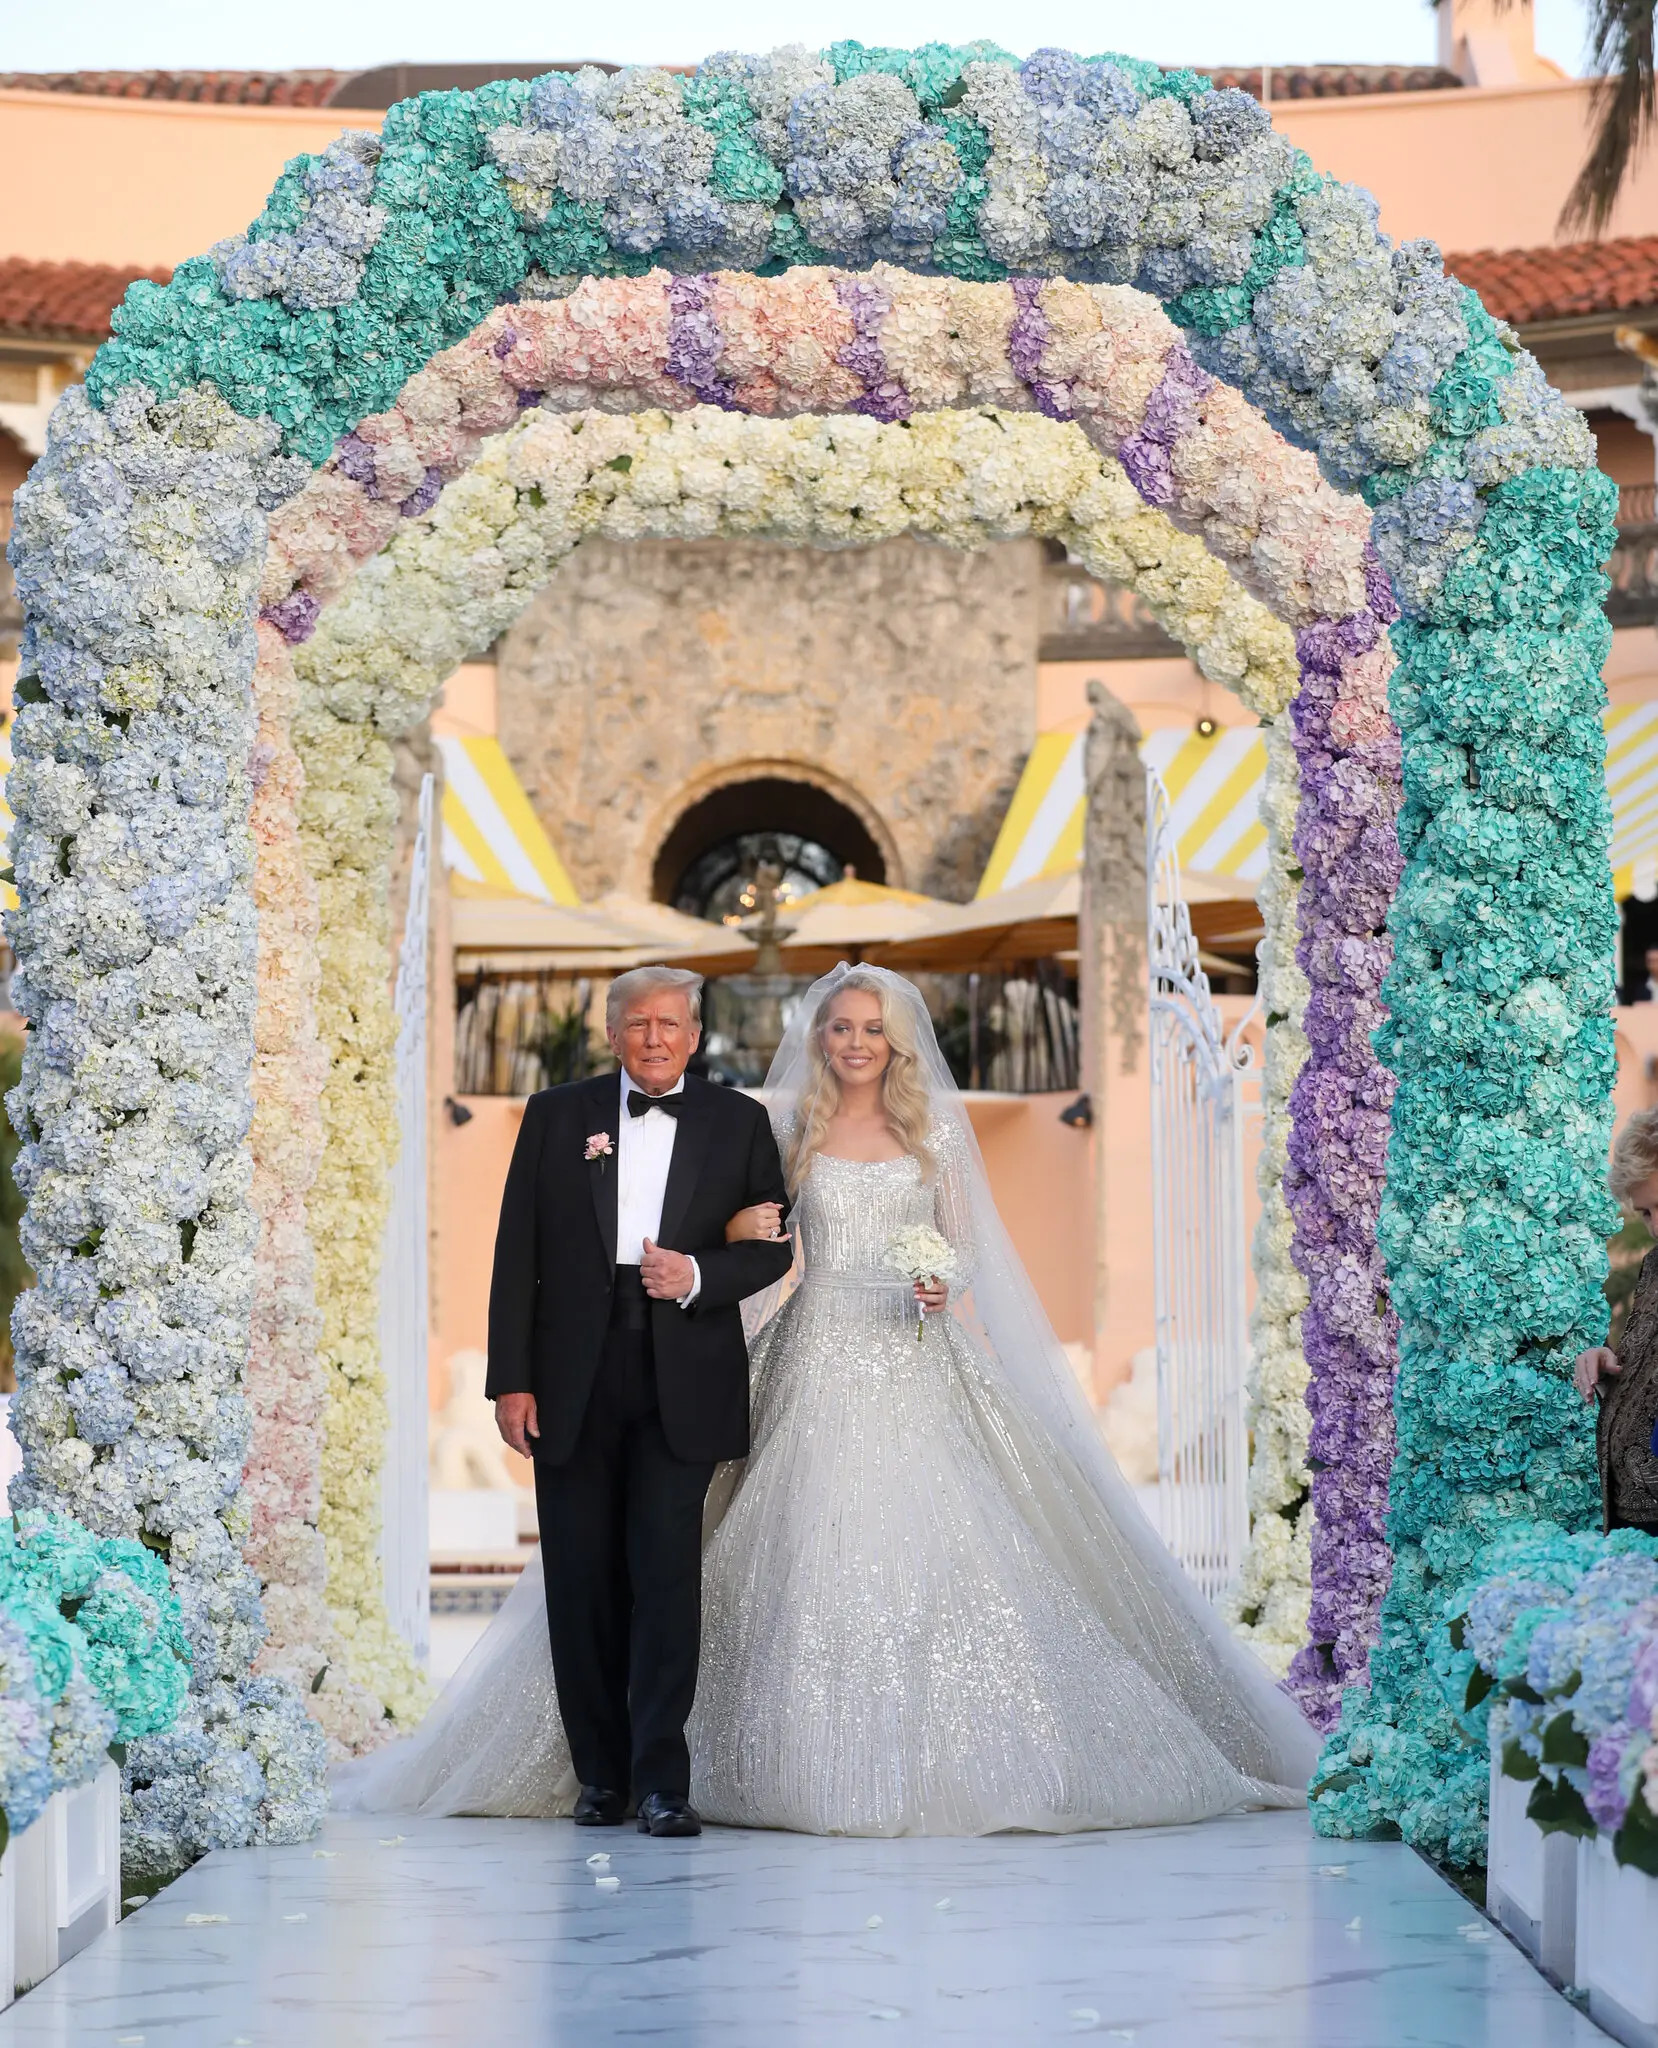 Đám cưới như mơ của gái út nhà ông Trump với bạn trai tỷ phú - 6